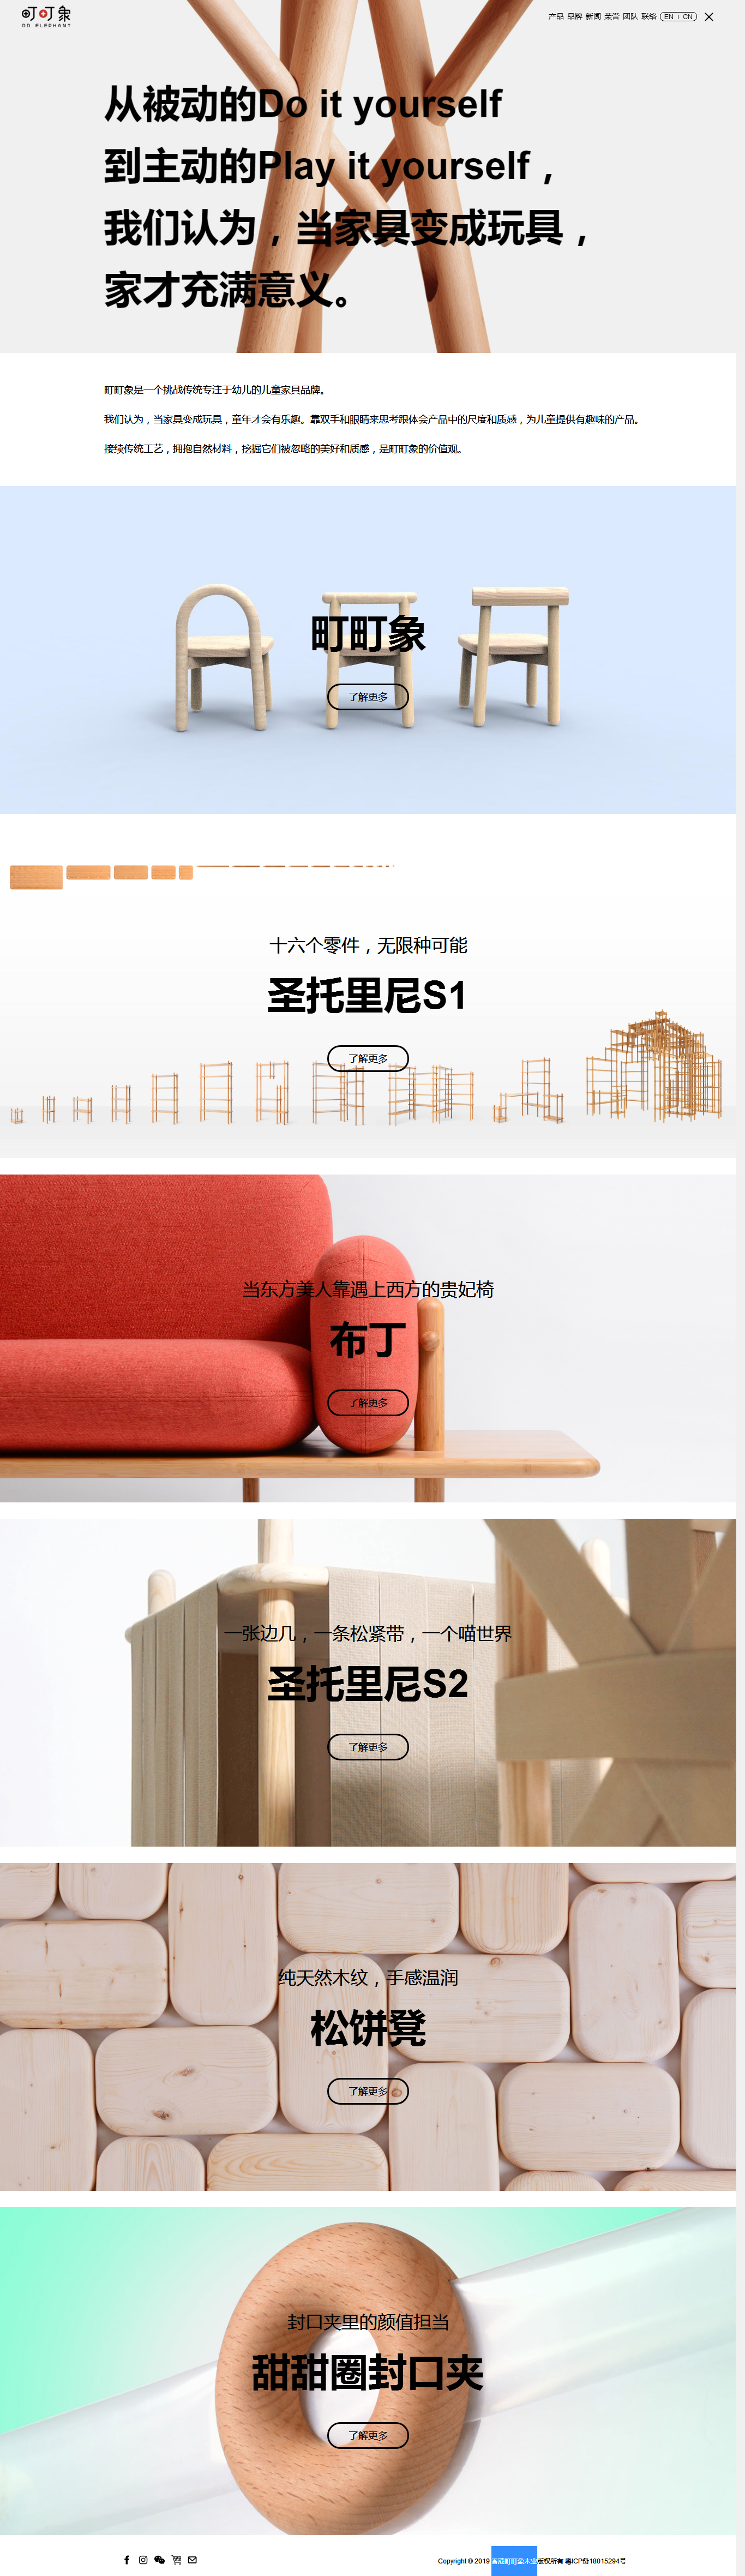 香港町町象木业-家装类网站建设案例